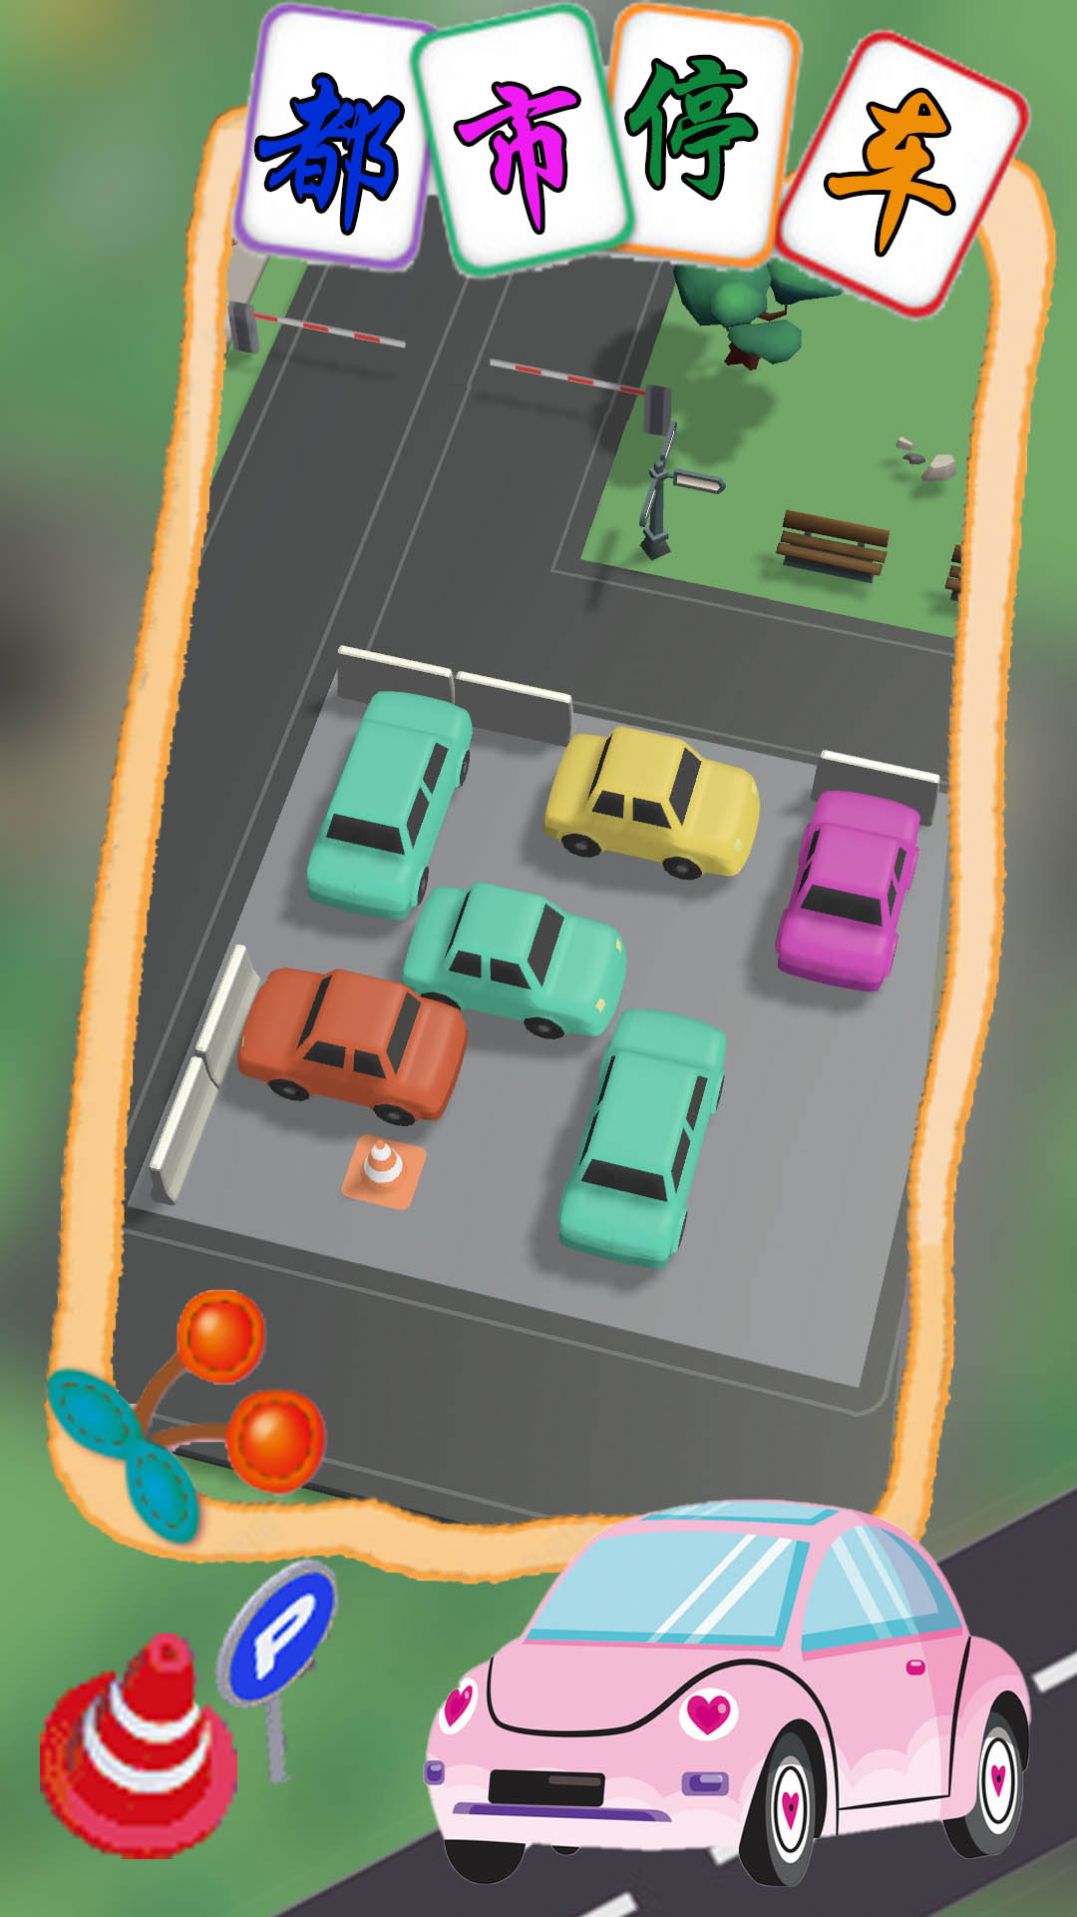 都市停车模拟游戏图1